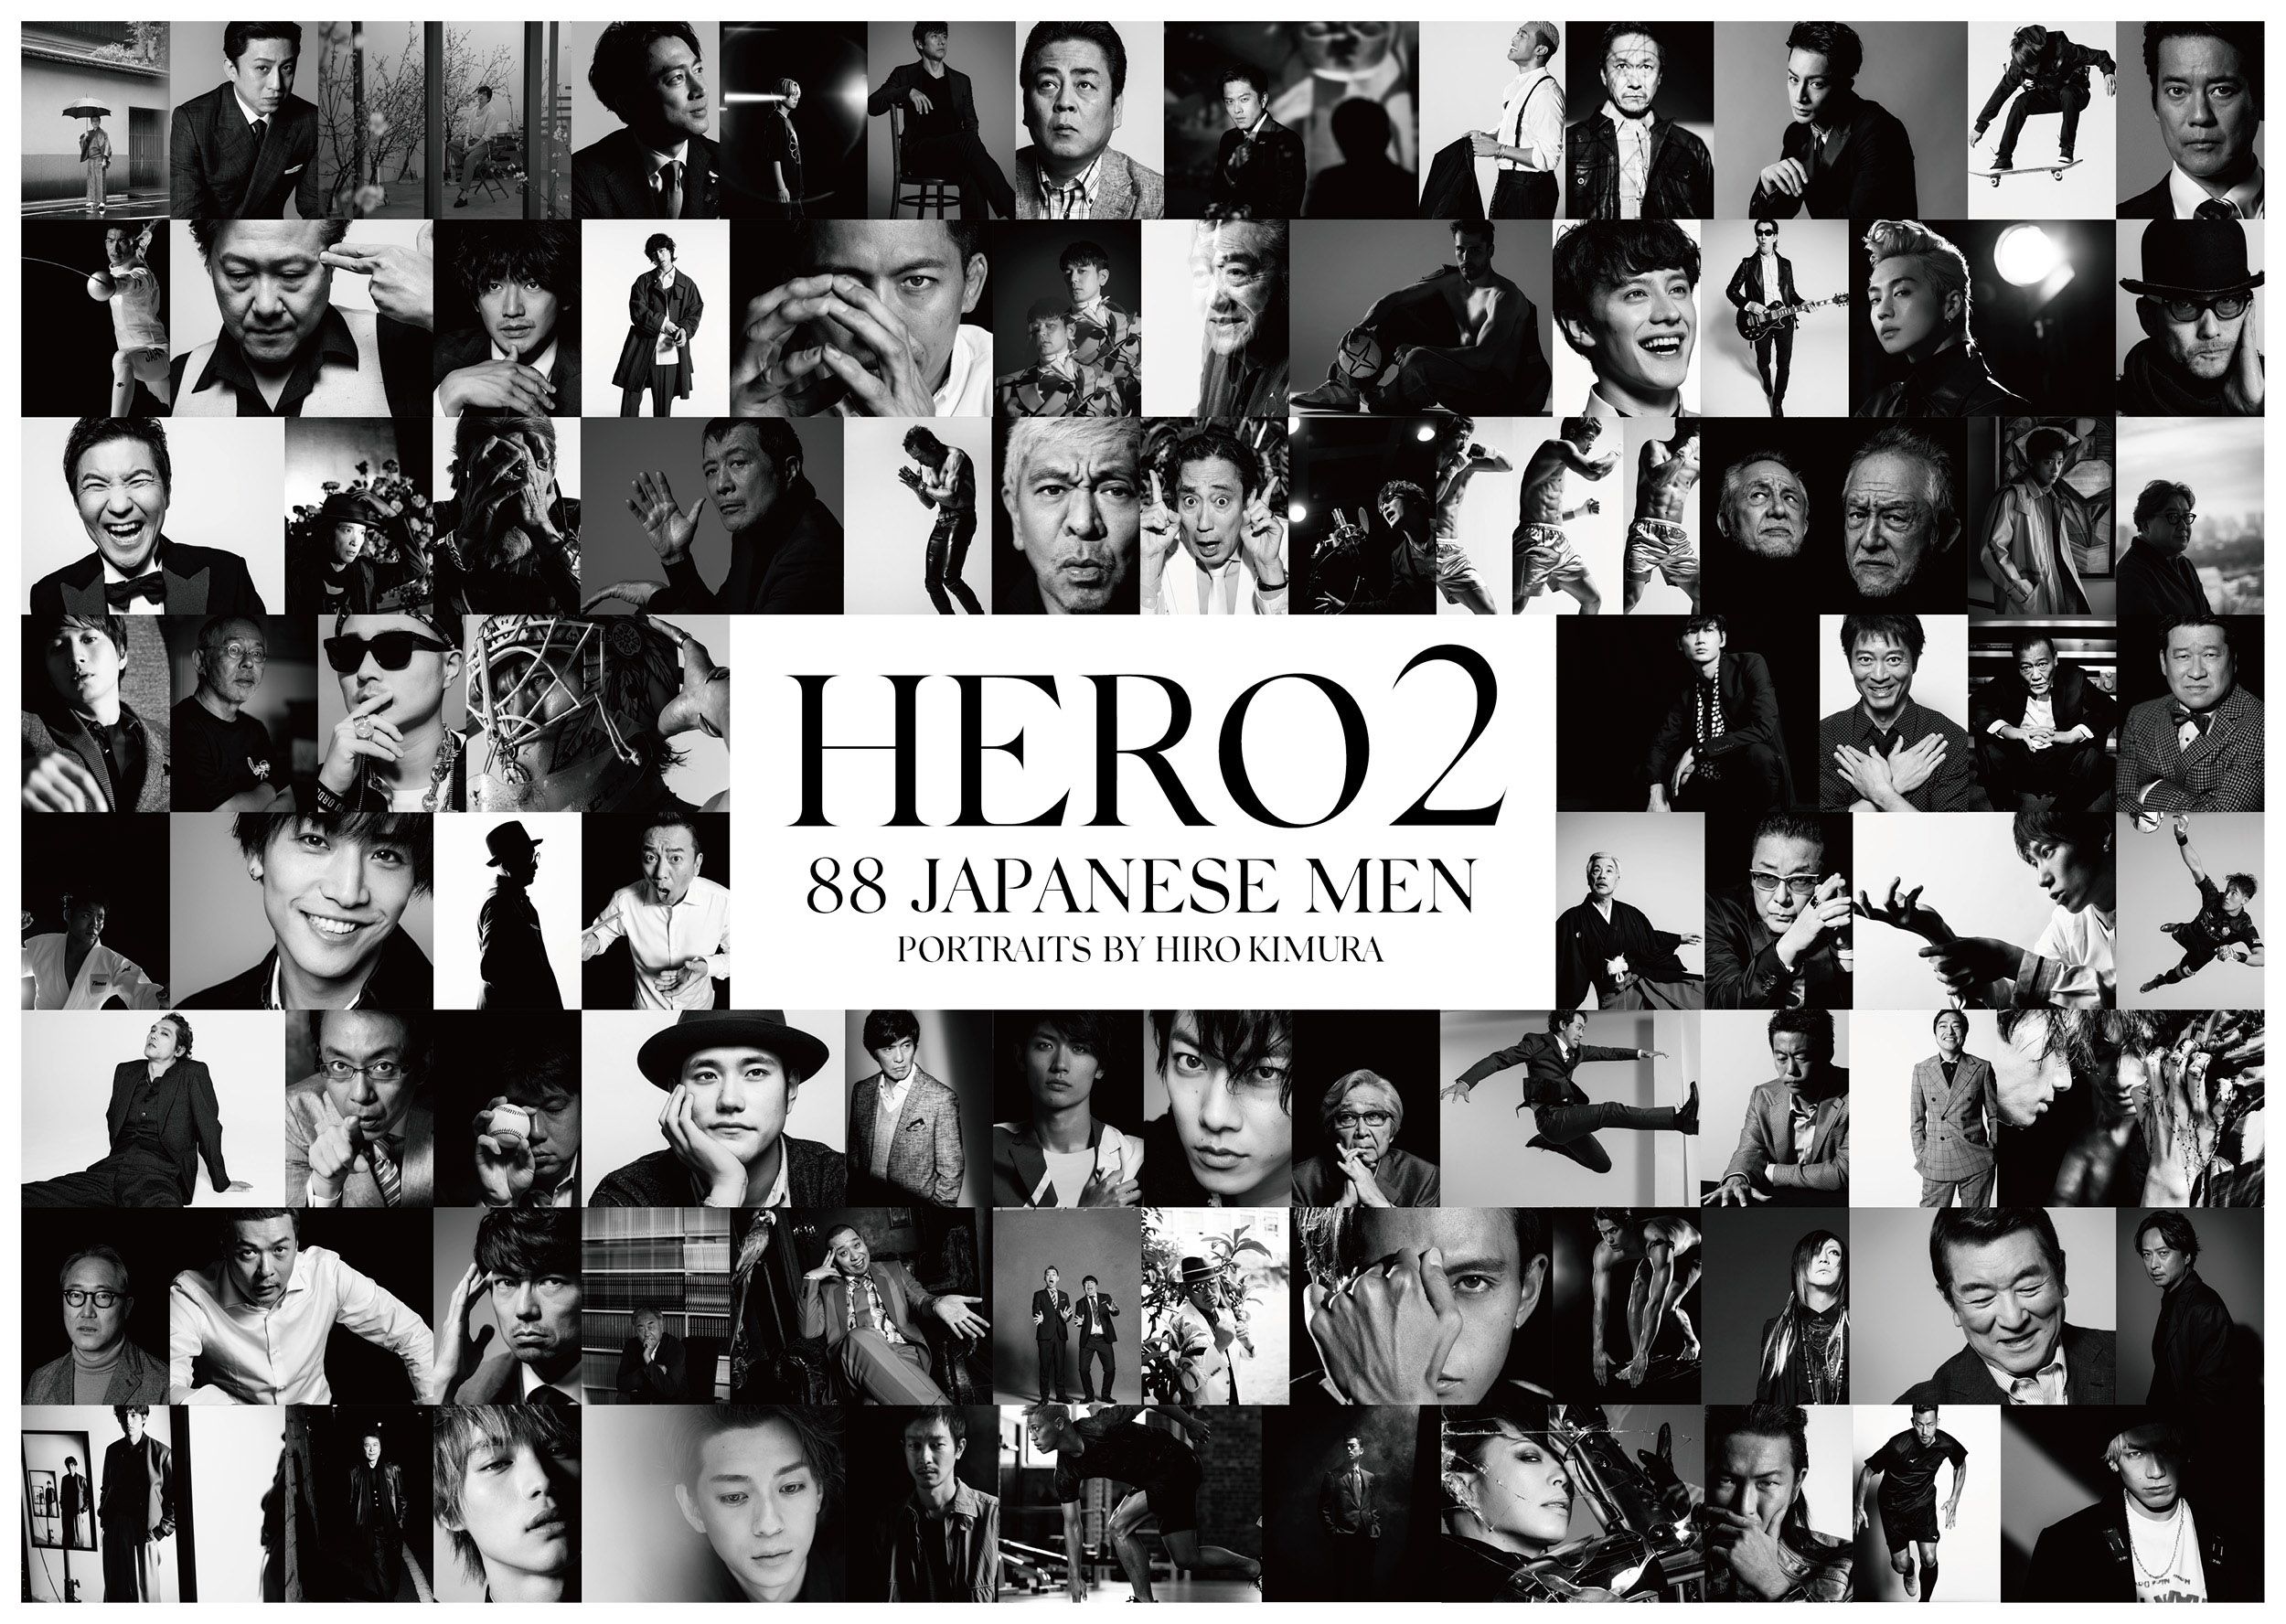 HIRO KIMURA 写真展HERO1 HERO2 セット販売昨年のHE